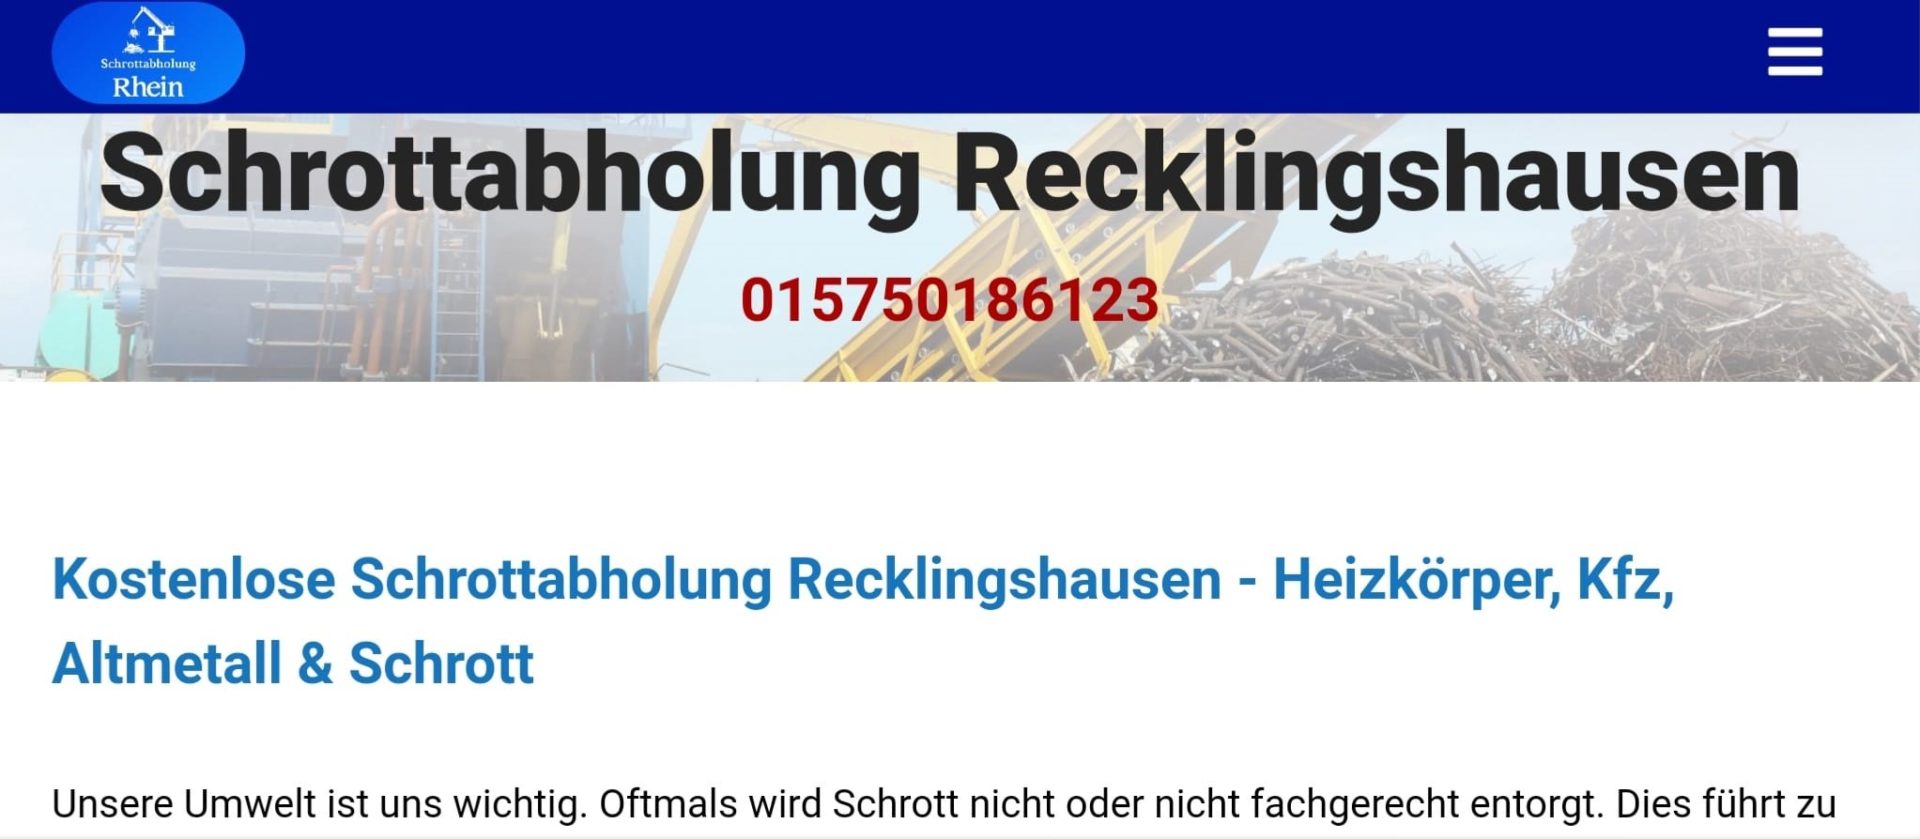 Schrottabholung Recklinghausen-a47eccba